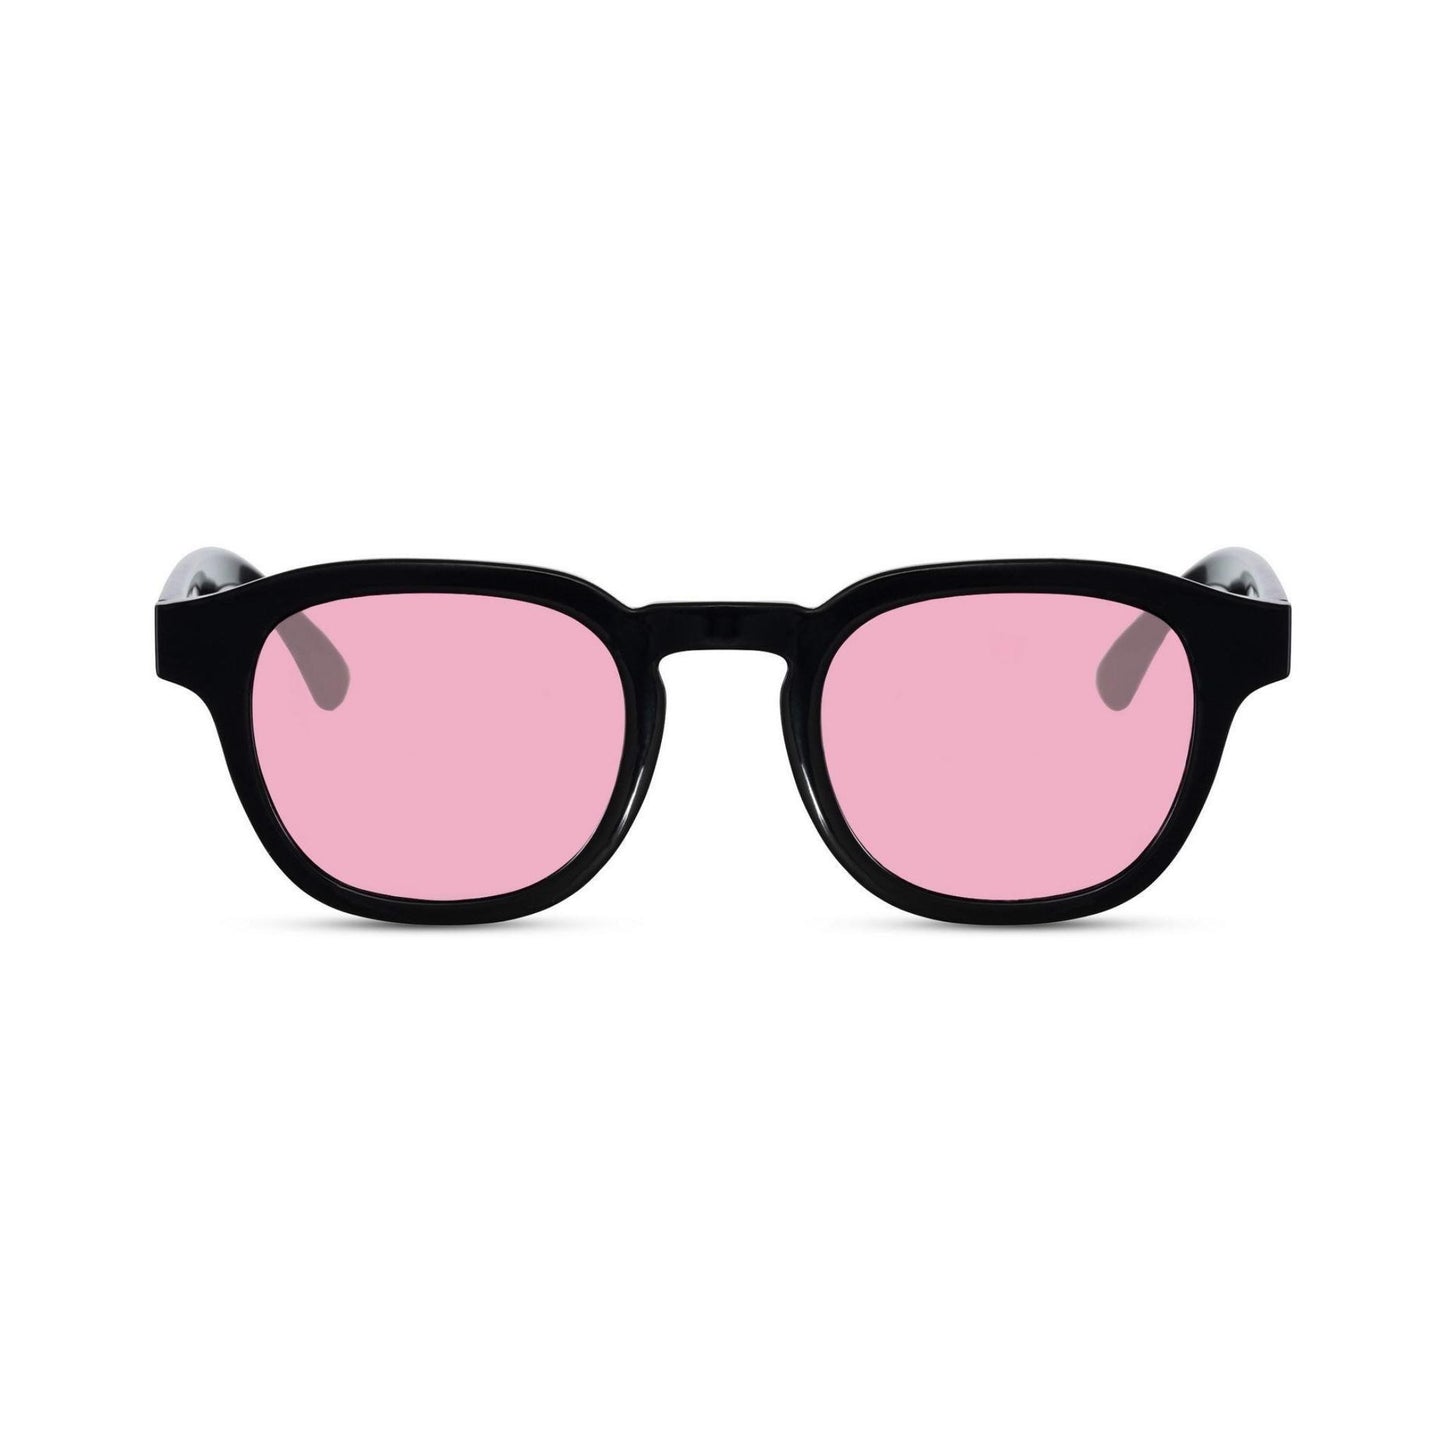 Γυαλιά ηλίου Montreal της Exposure Sunglasses με προστασία UV400 με μαύρο σκελετό και ροζ φακό.